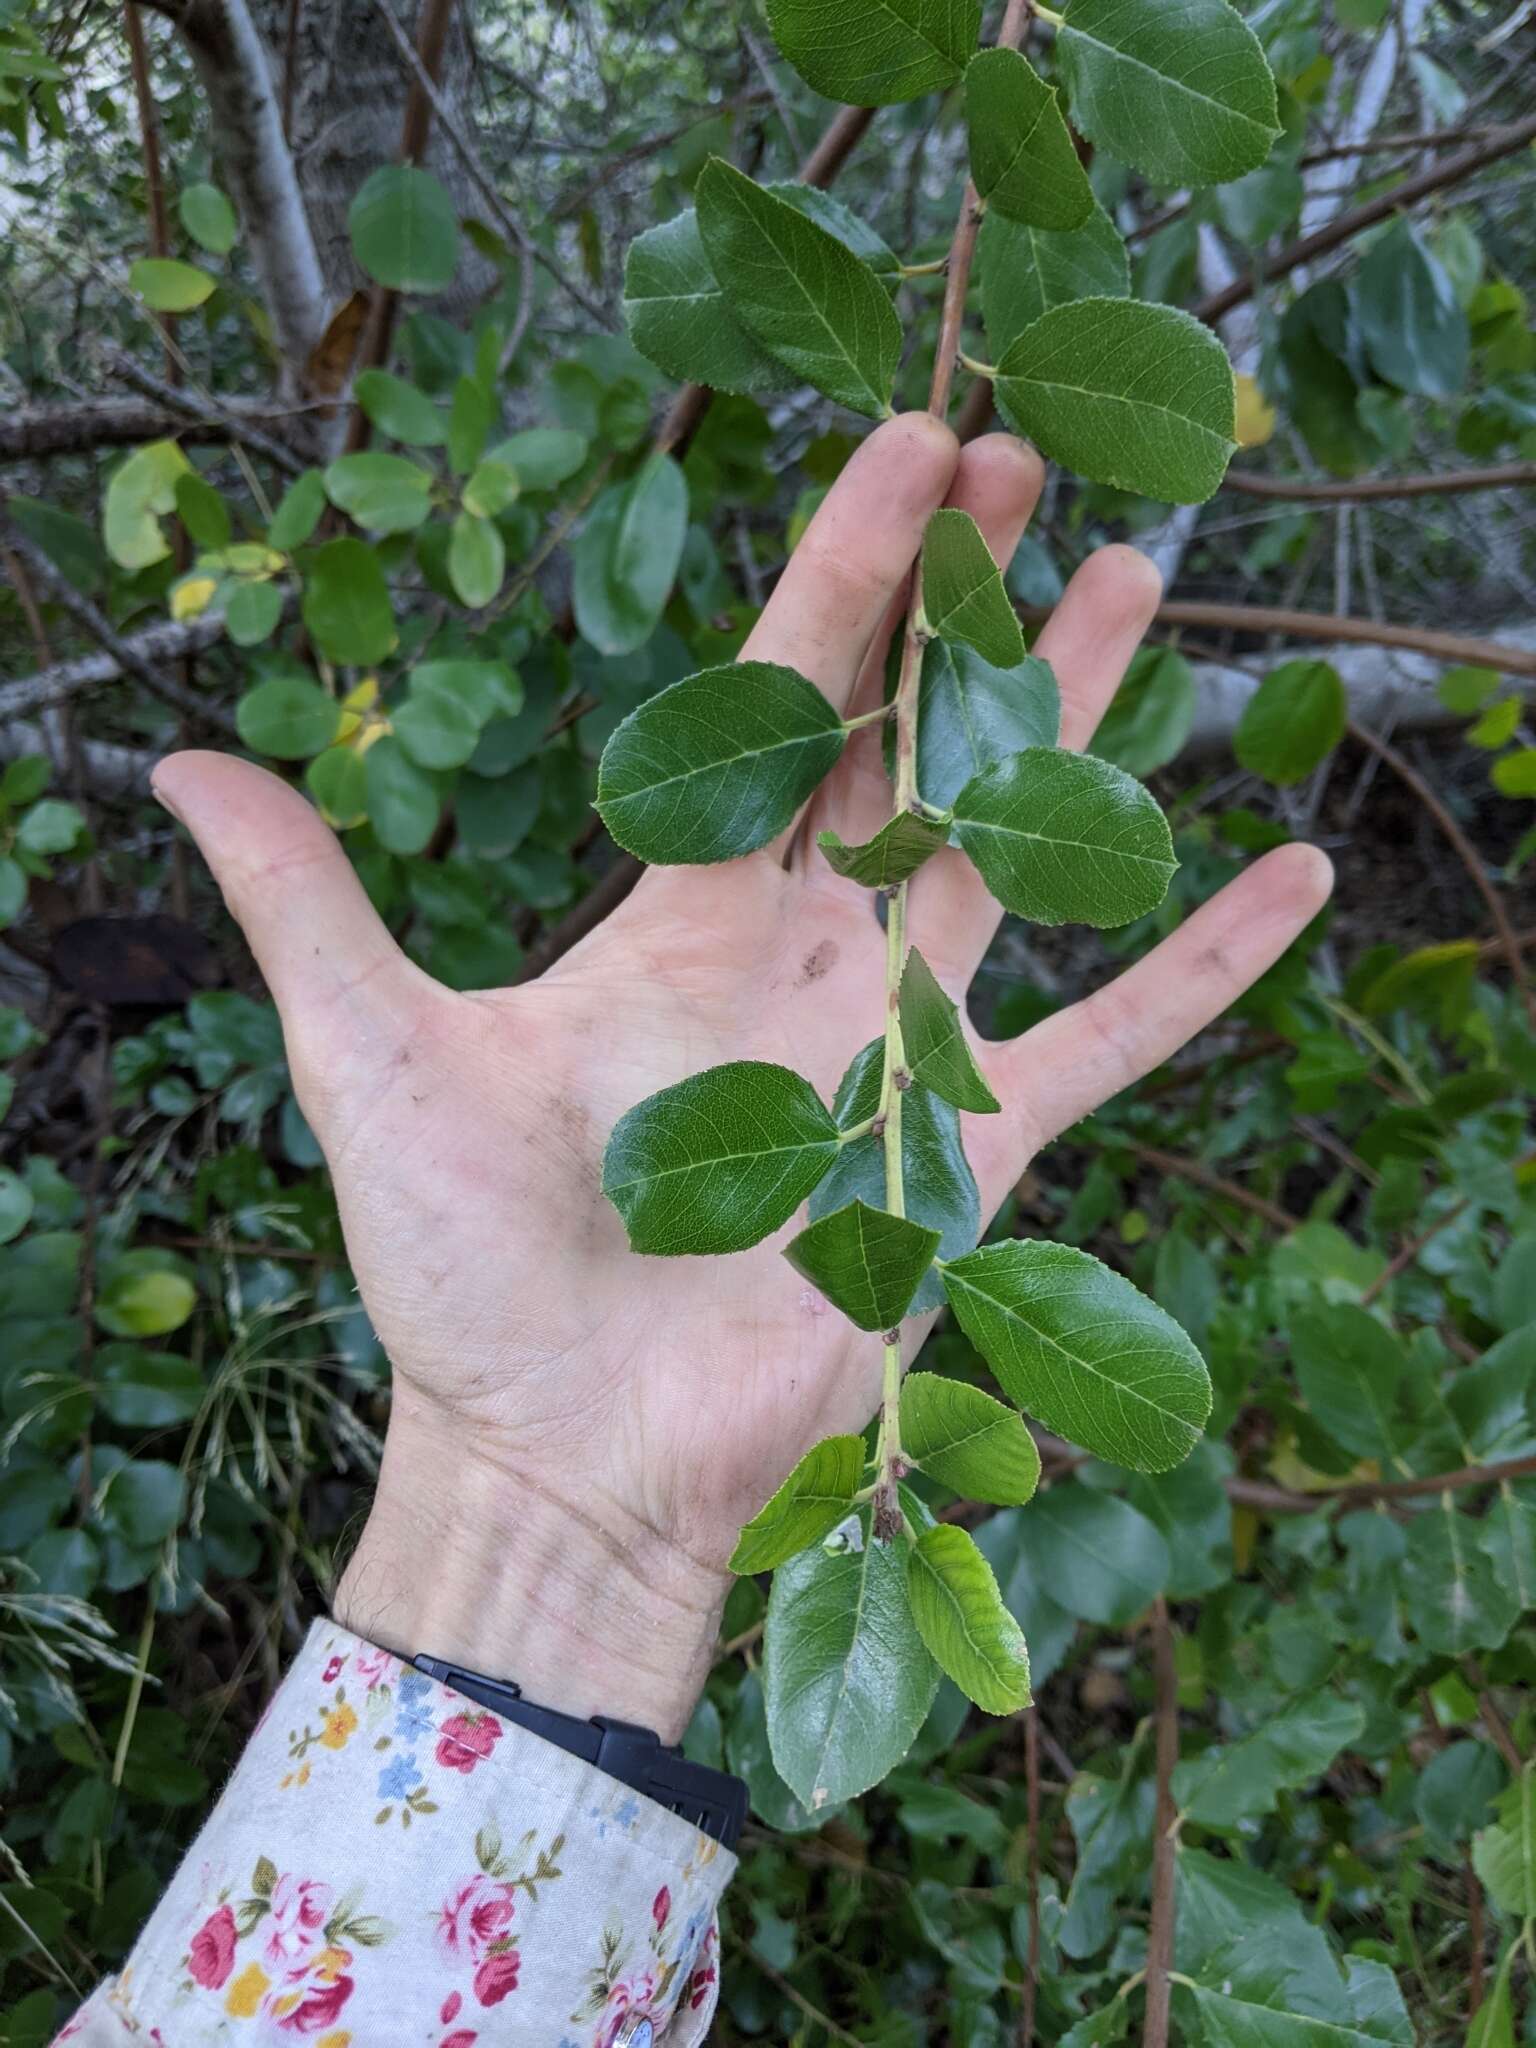 Imagem de Endotropis crocea subsp. pirifolia (Greene) Hauenschild